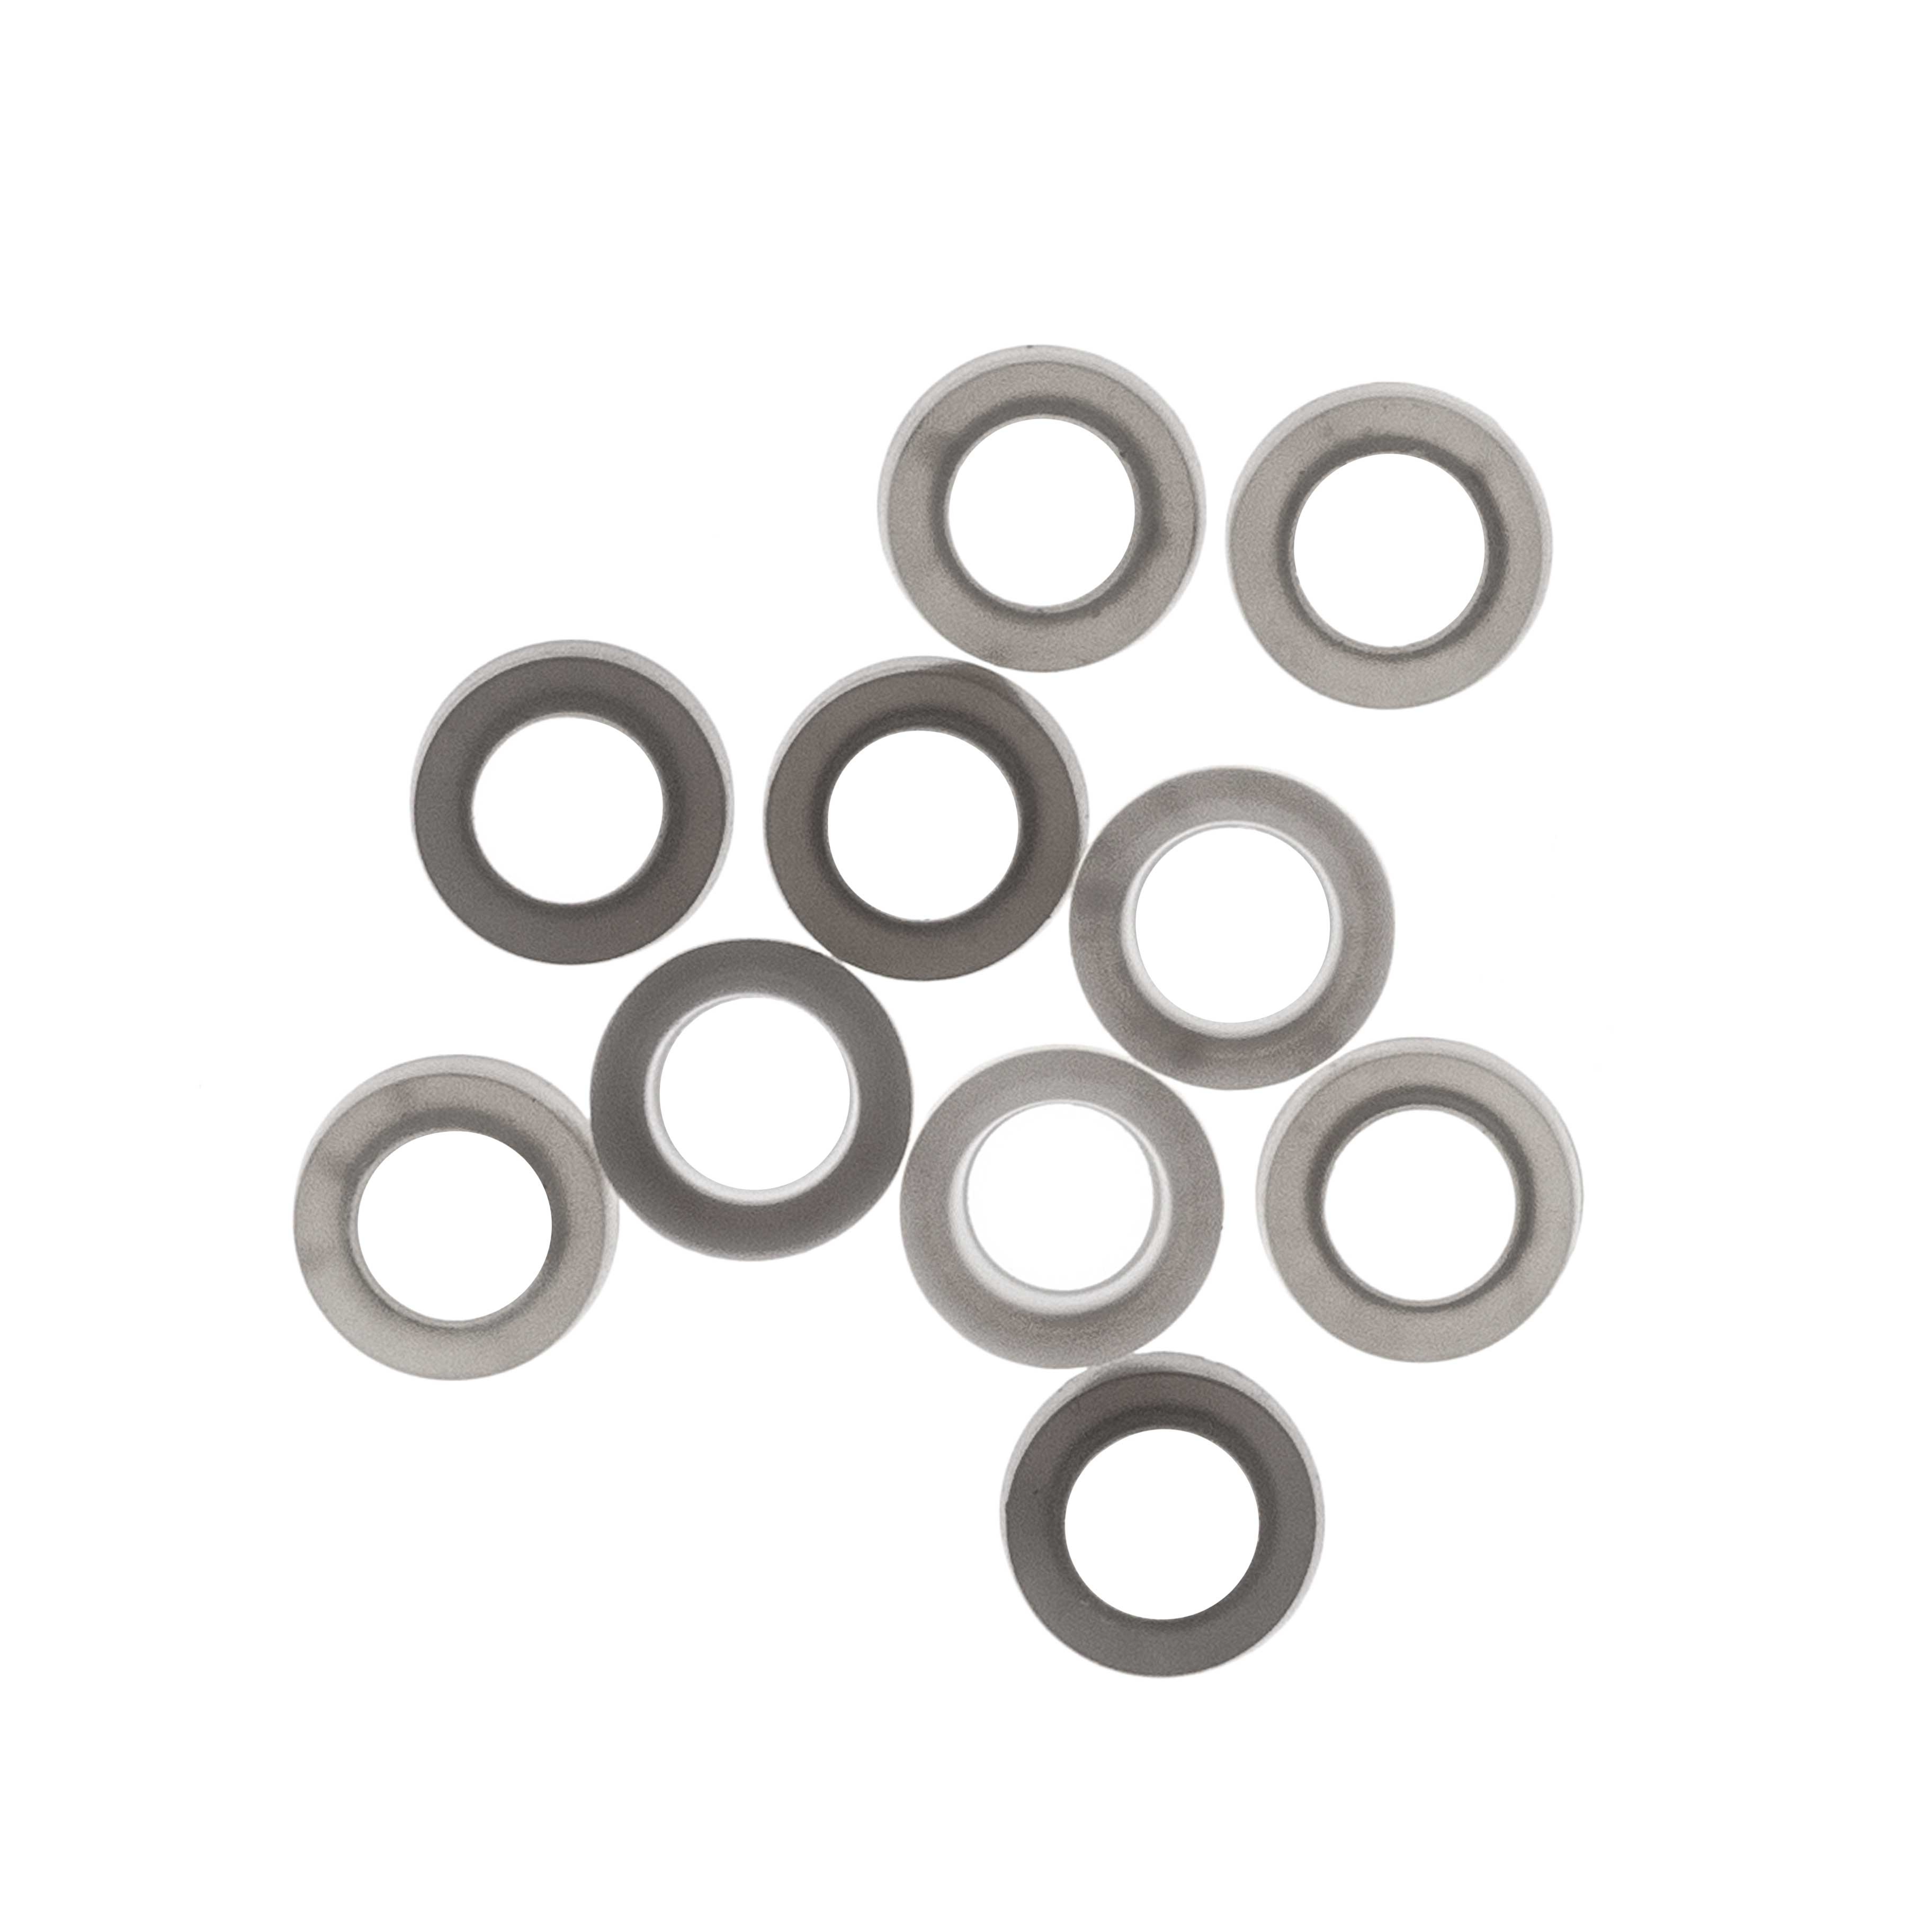 Juntas de silicona con recubrimiento de PTFE para tapones abiertos de rosca GL. Rosca: GL18. Ø ext. (mm): 16. Ø int. (mm): 8